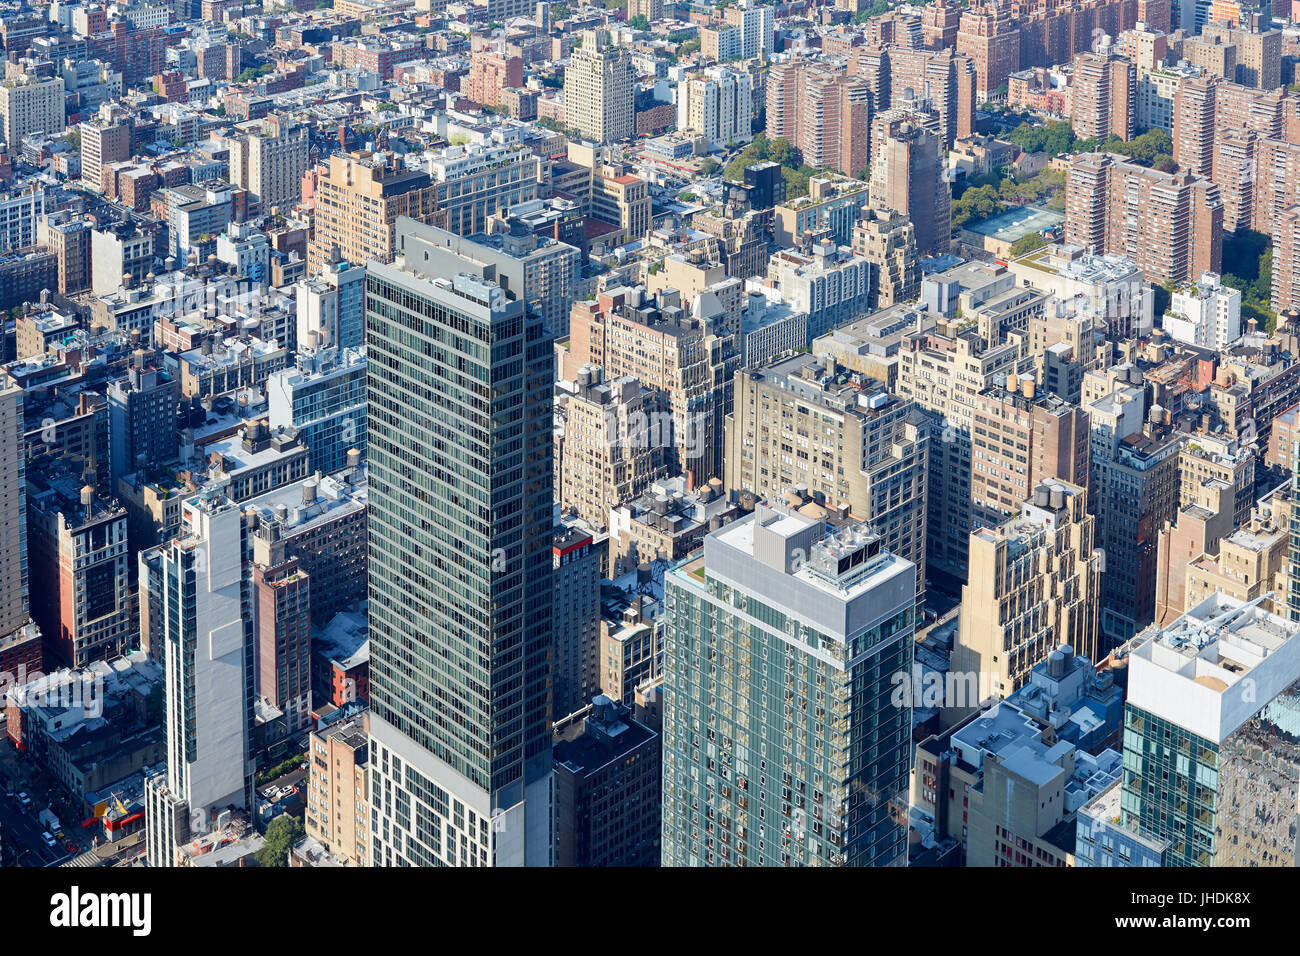 New York City Manhattan skyline vue aérienne avec des gratte-ciel et bâtiments Banque D'Images